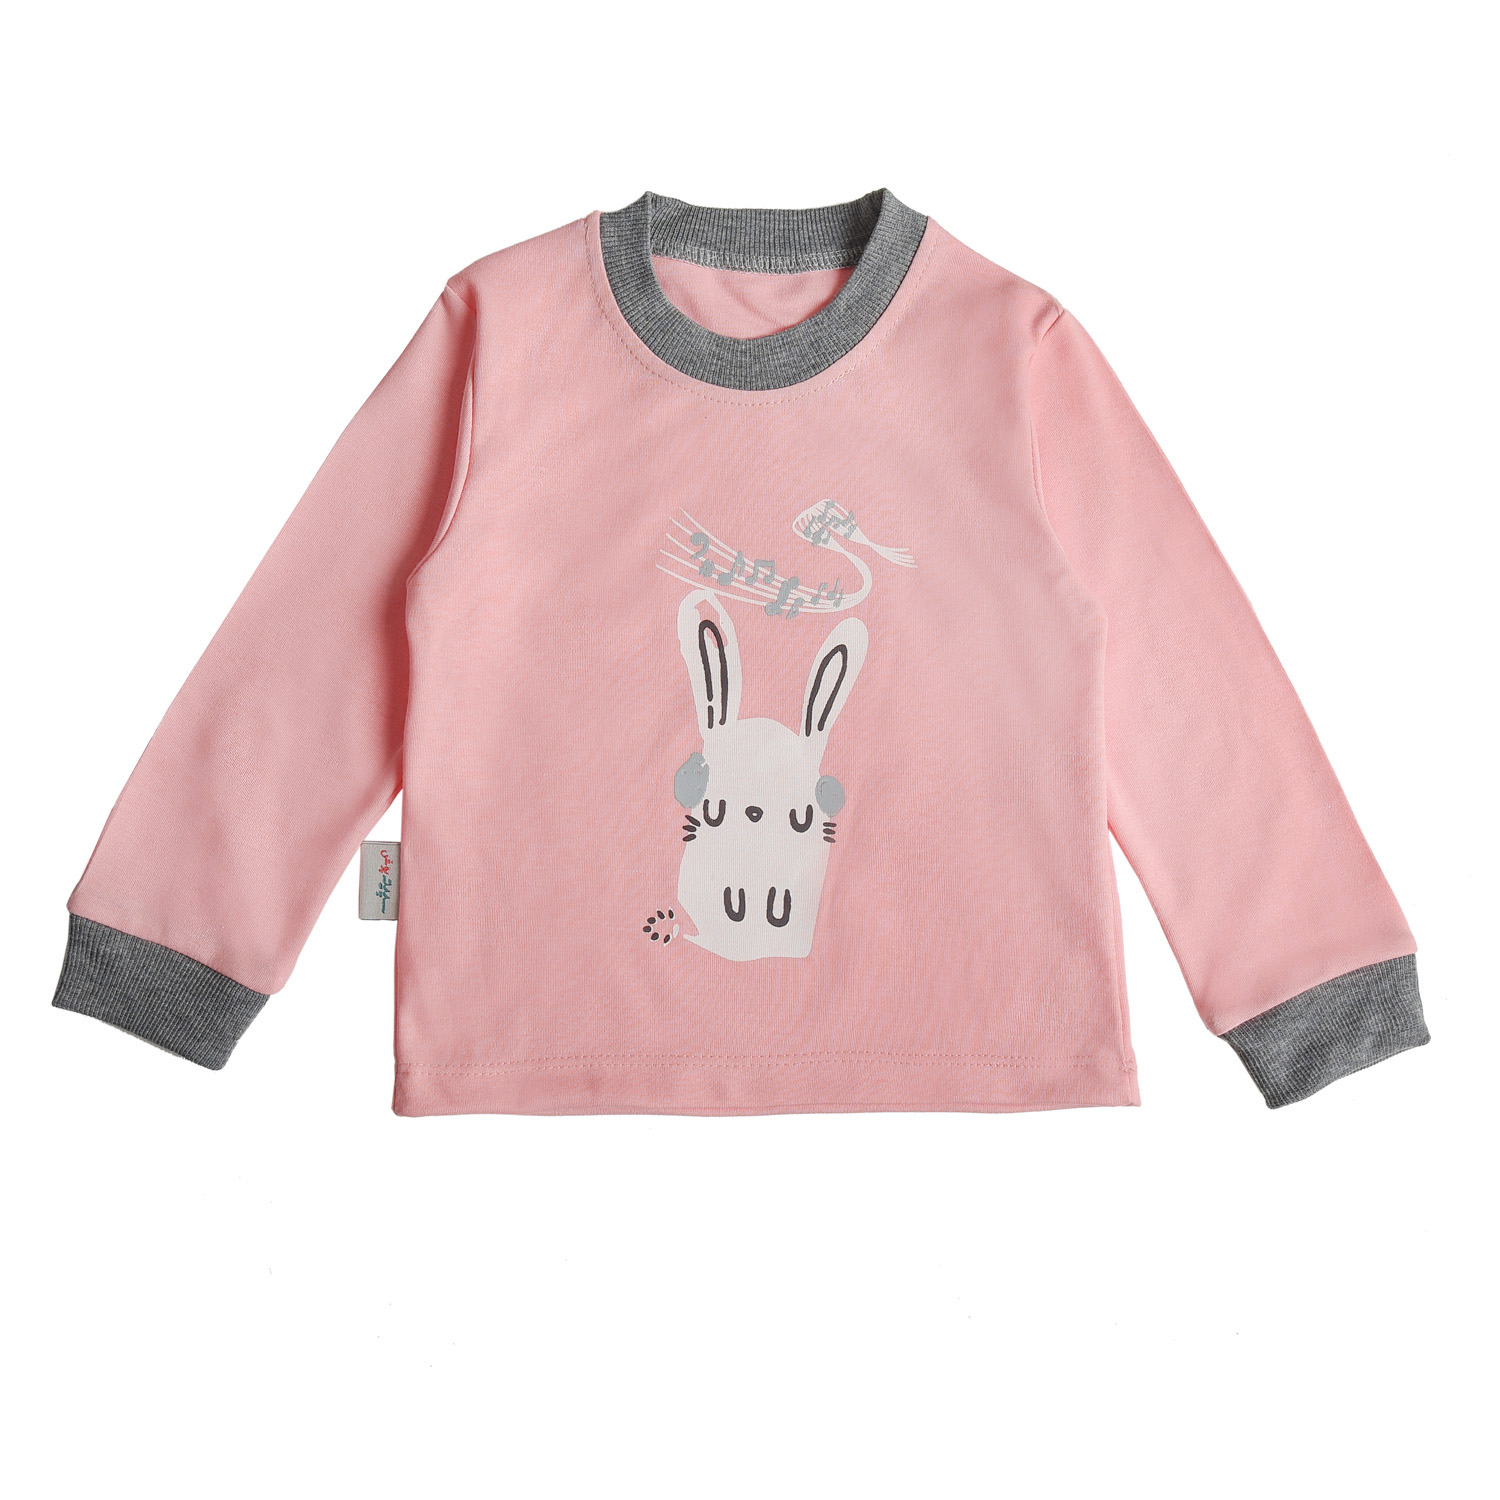 ست تی شرت آستین بلند و شلوار بچگانه سپیدپوش مدل خرگوش و موزیک -  - 11